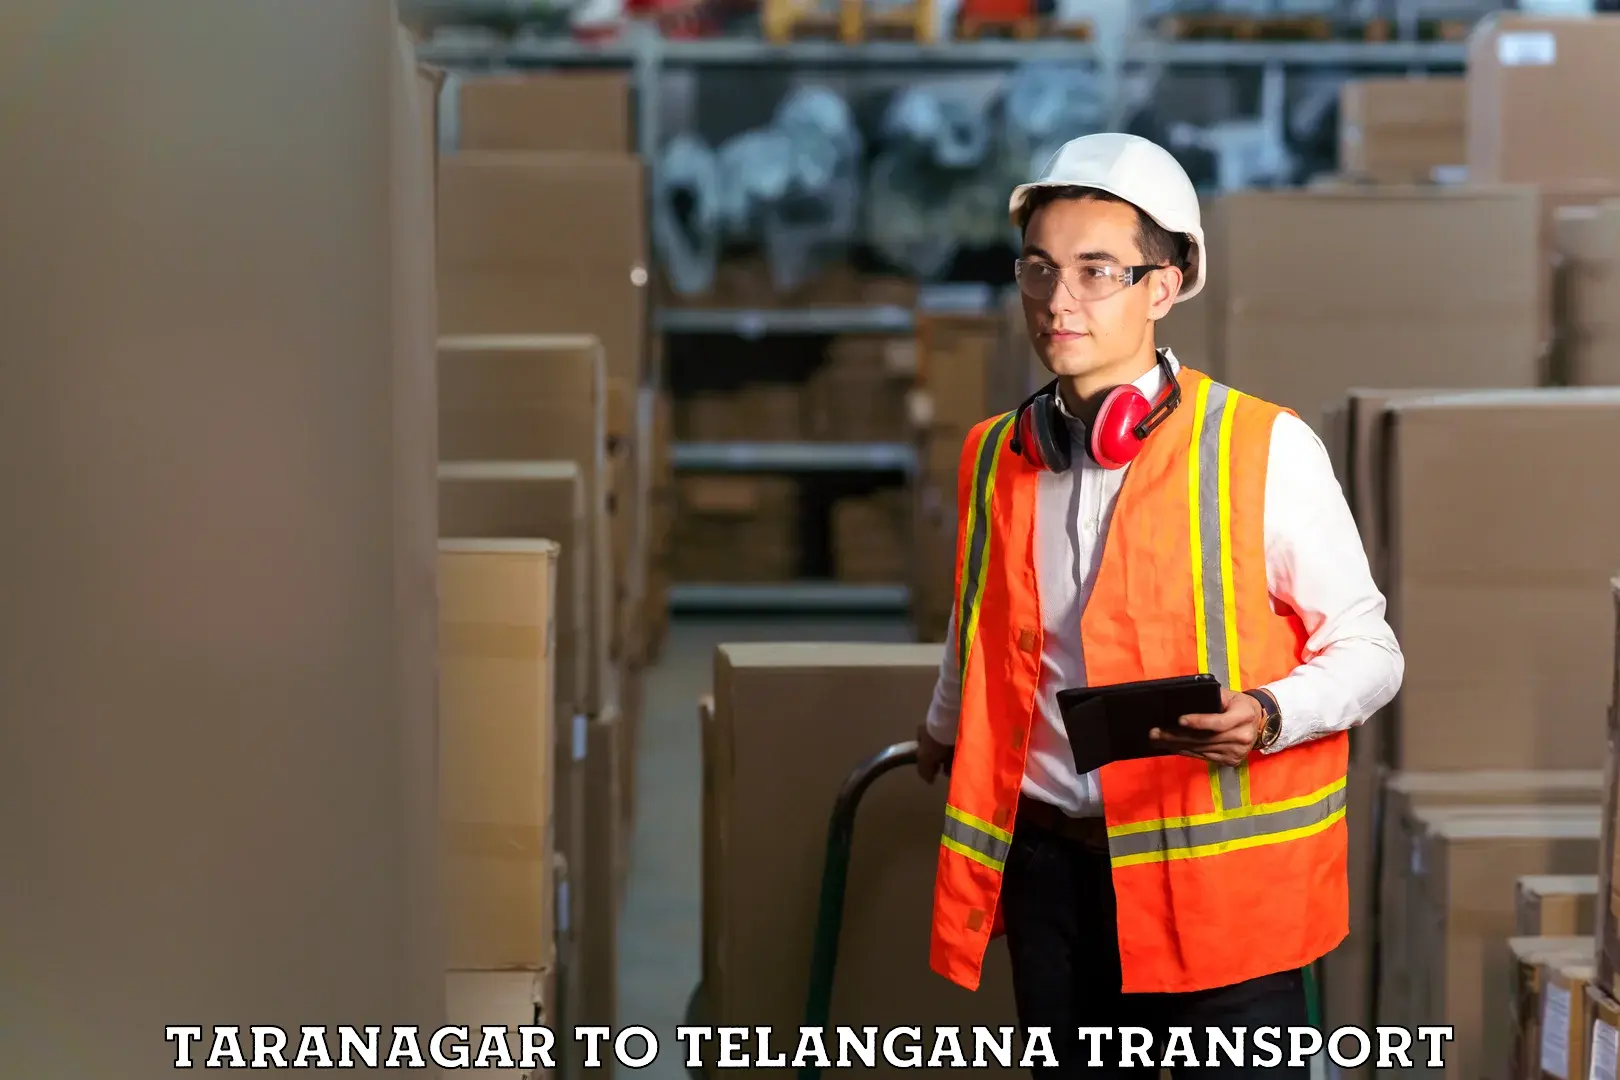 Furniture transport service Taranagar to Mahabubnagar